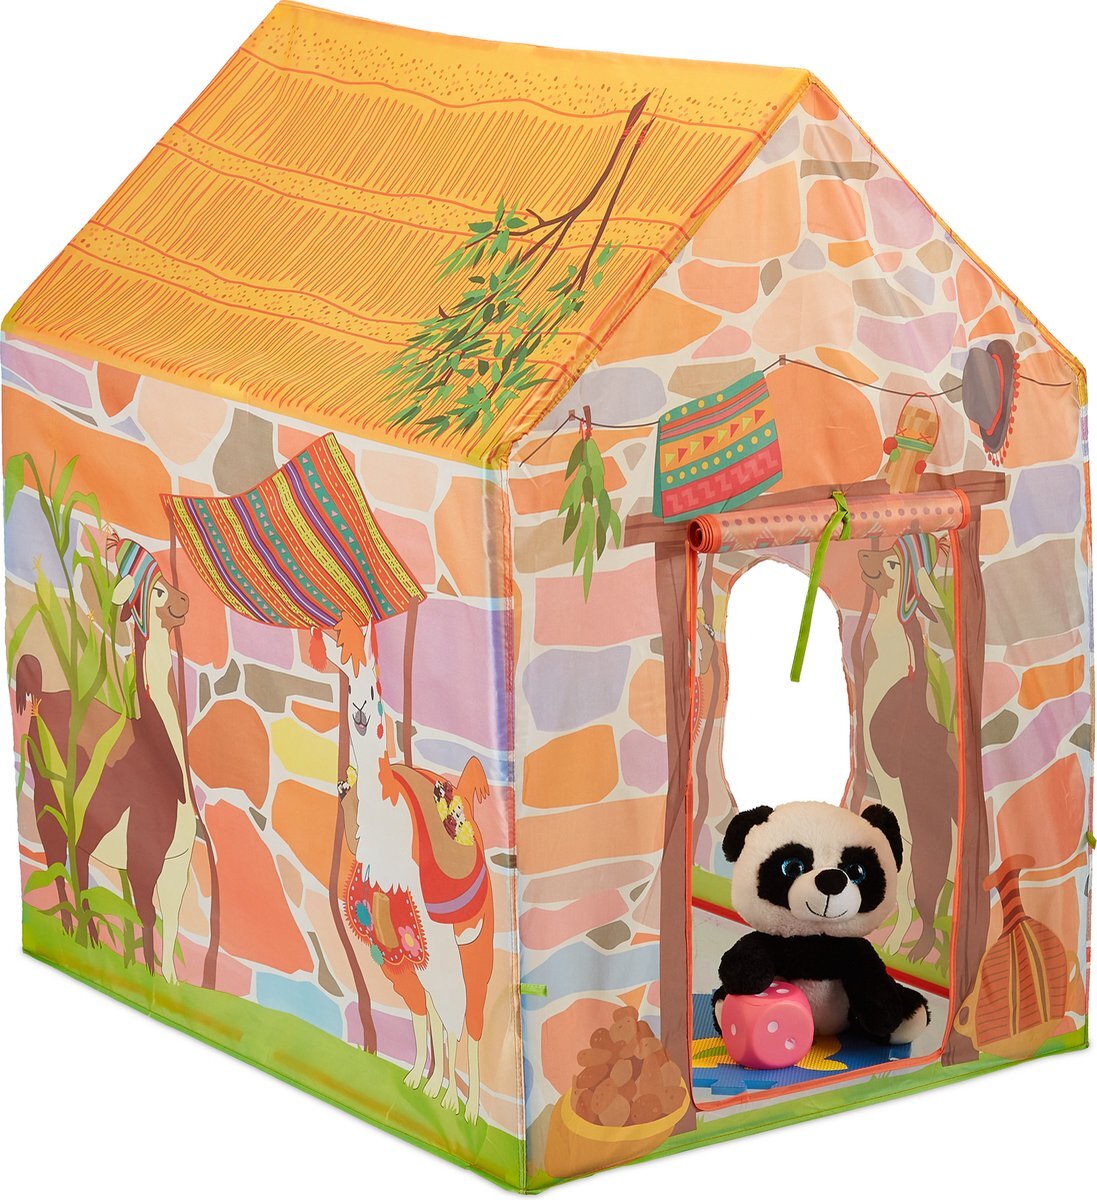 Relaxdays speeltent lama - speelhuis kinderkamer - kindertent indoor - kinderspeeltent